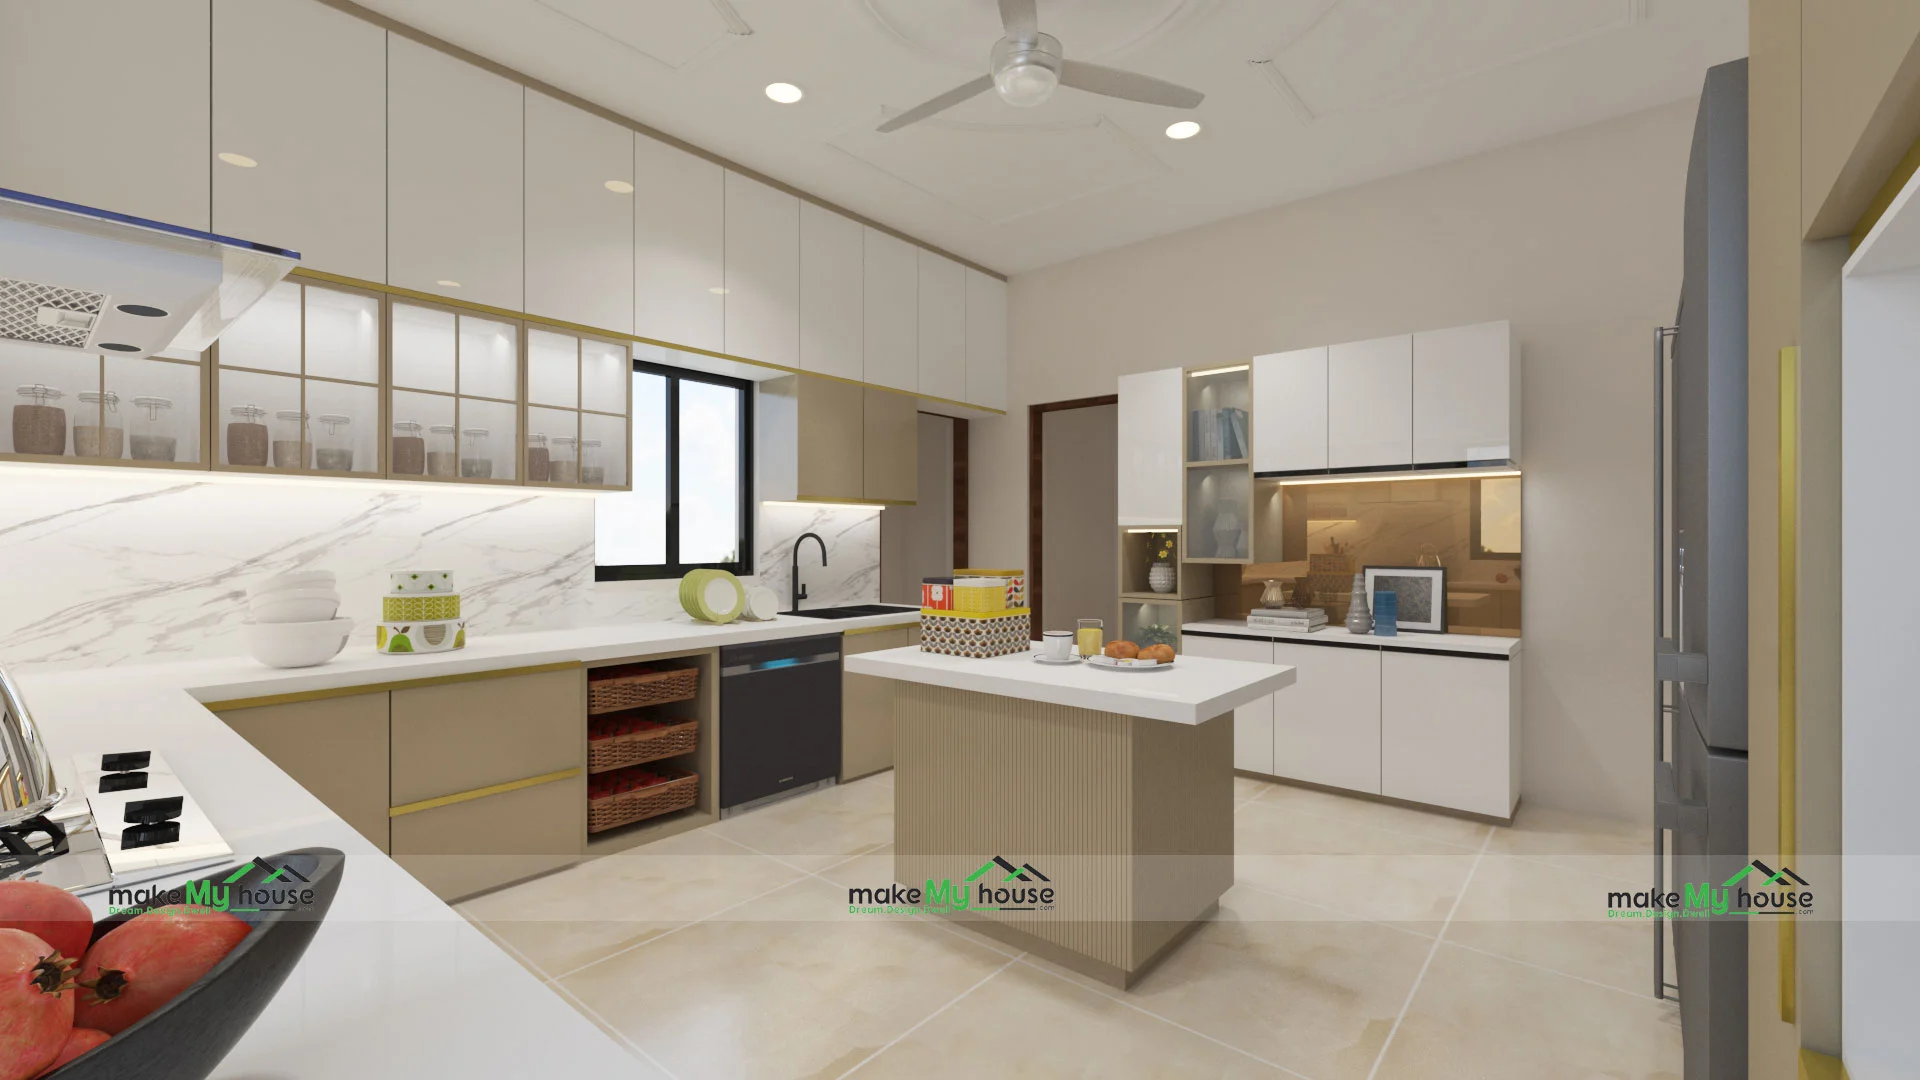 home kitchen design